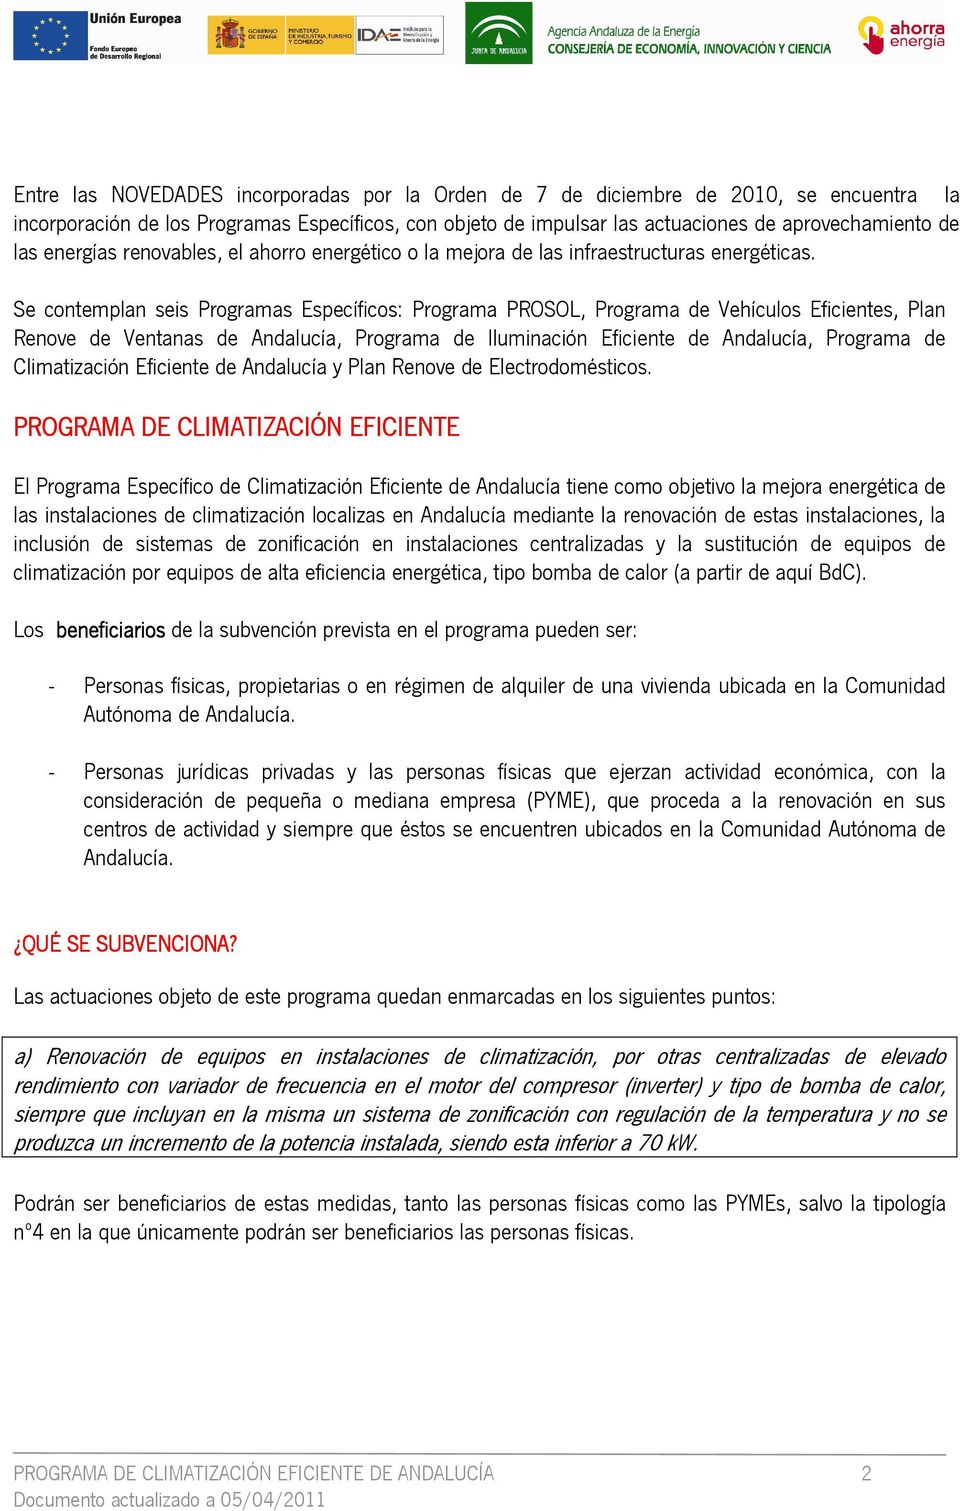 Se contemplan seis Programas Específicos: Programa PROSOL, Programa de Vehículos Eficientes, Plan Renove de Ventanas de Andalucía, Programa de Iluminación Eficiente de Andalucía, Programa de